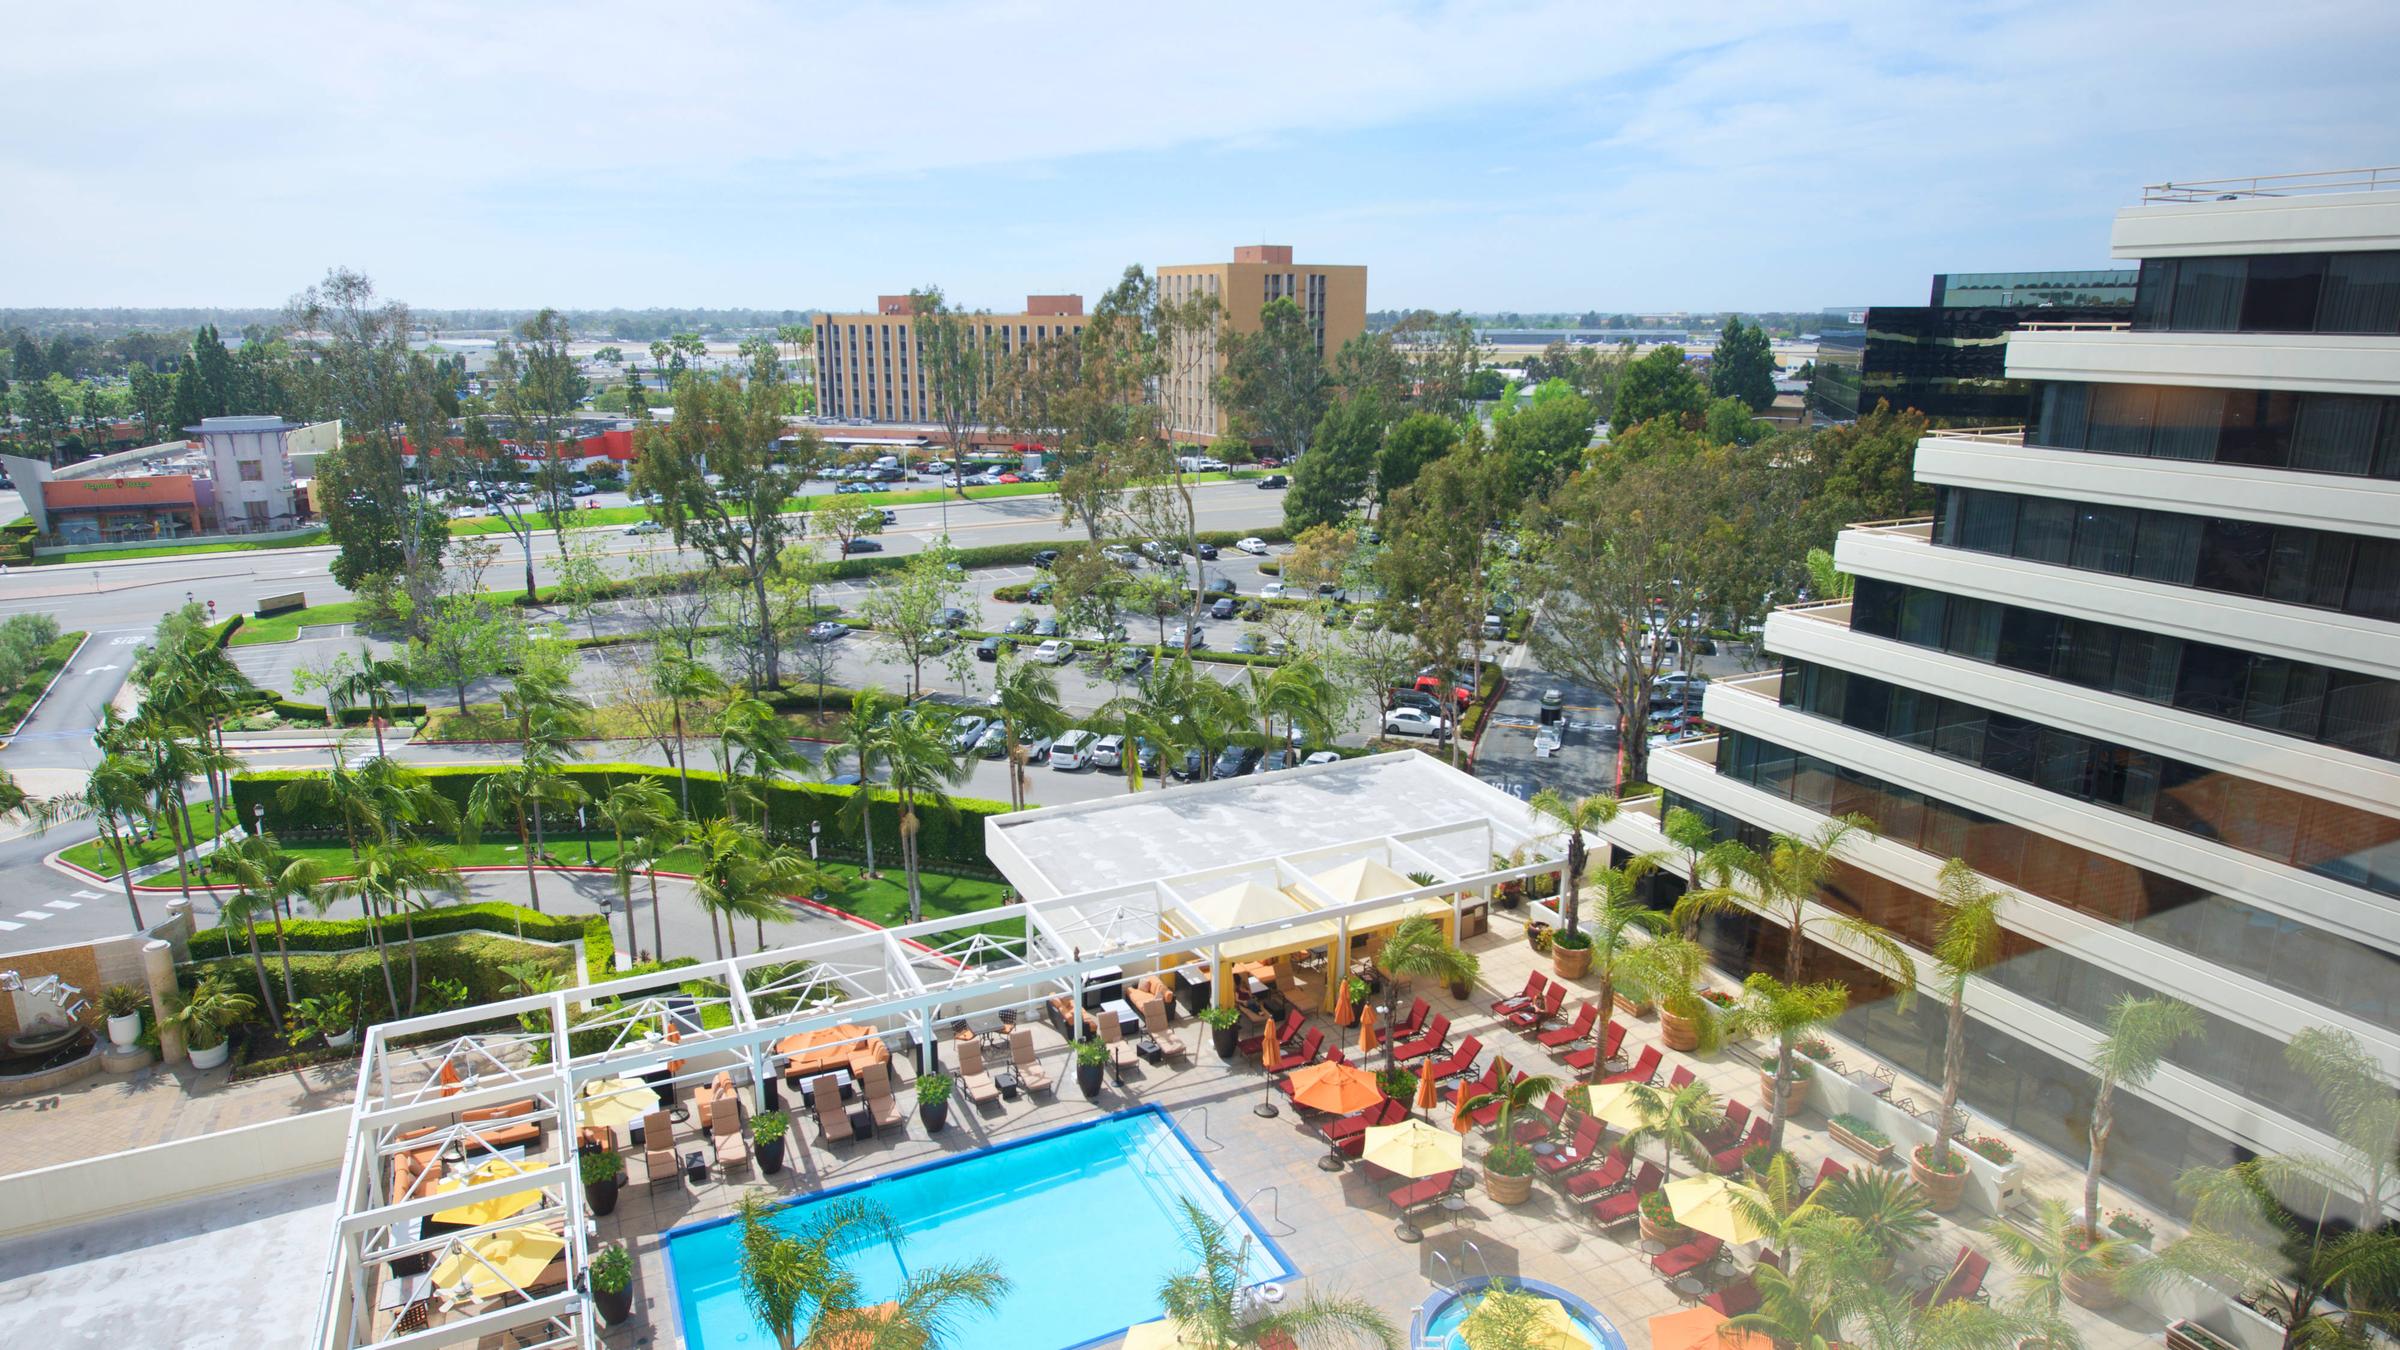 Renaissance Newport Beach Hotel Is Pet Friendly - 